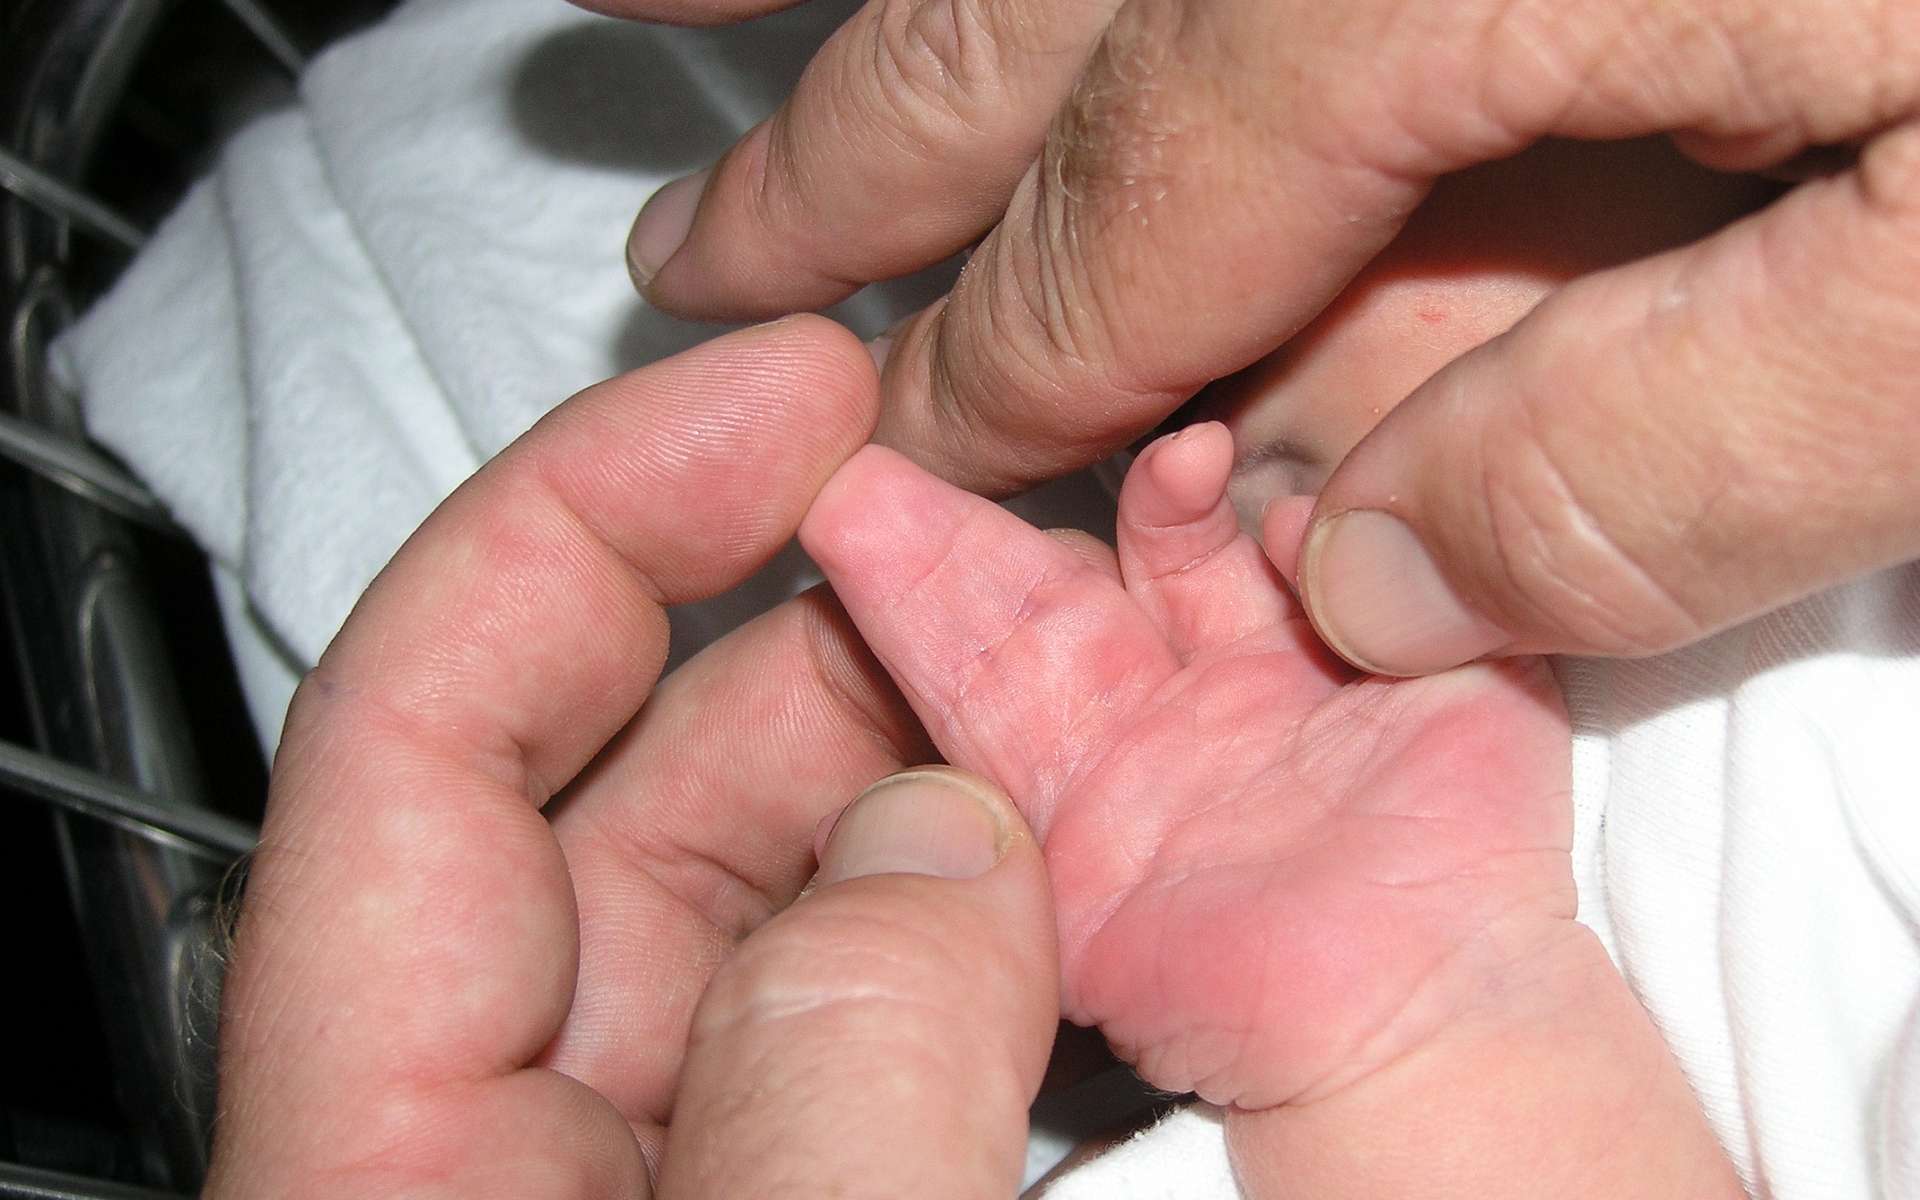 Ce bébé a deux doigts qui ne sont pas correctement séparés : c'est une syndactylie. © Wikipedia, domaine public